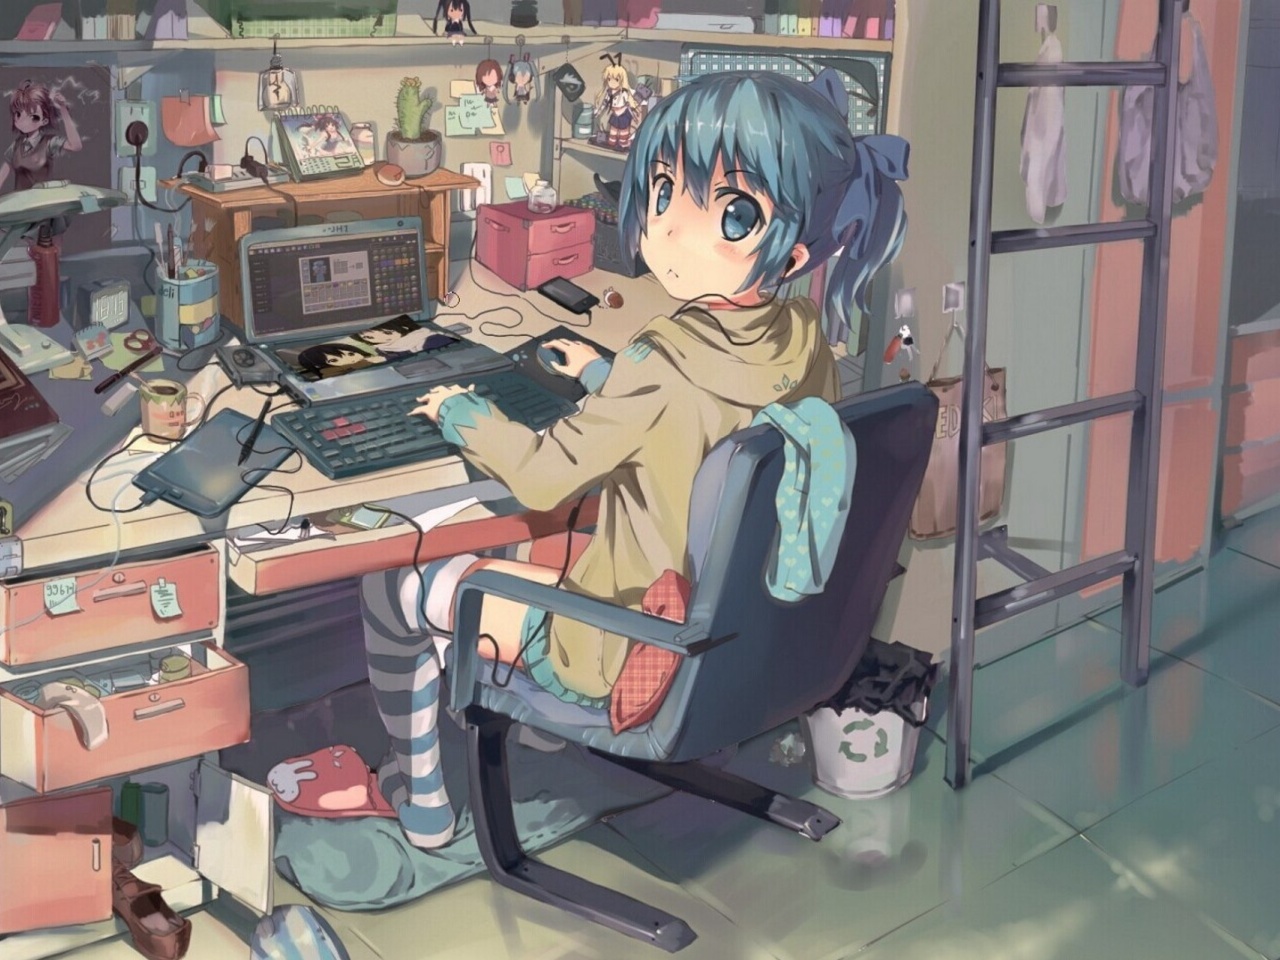 Fondo de pantalla Anime girl Computer designer 1280x960